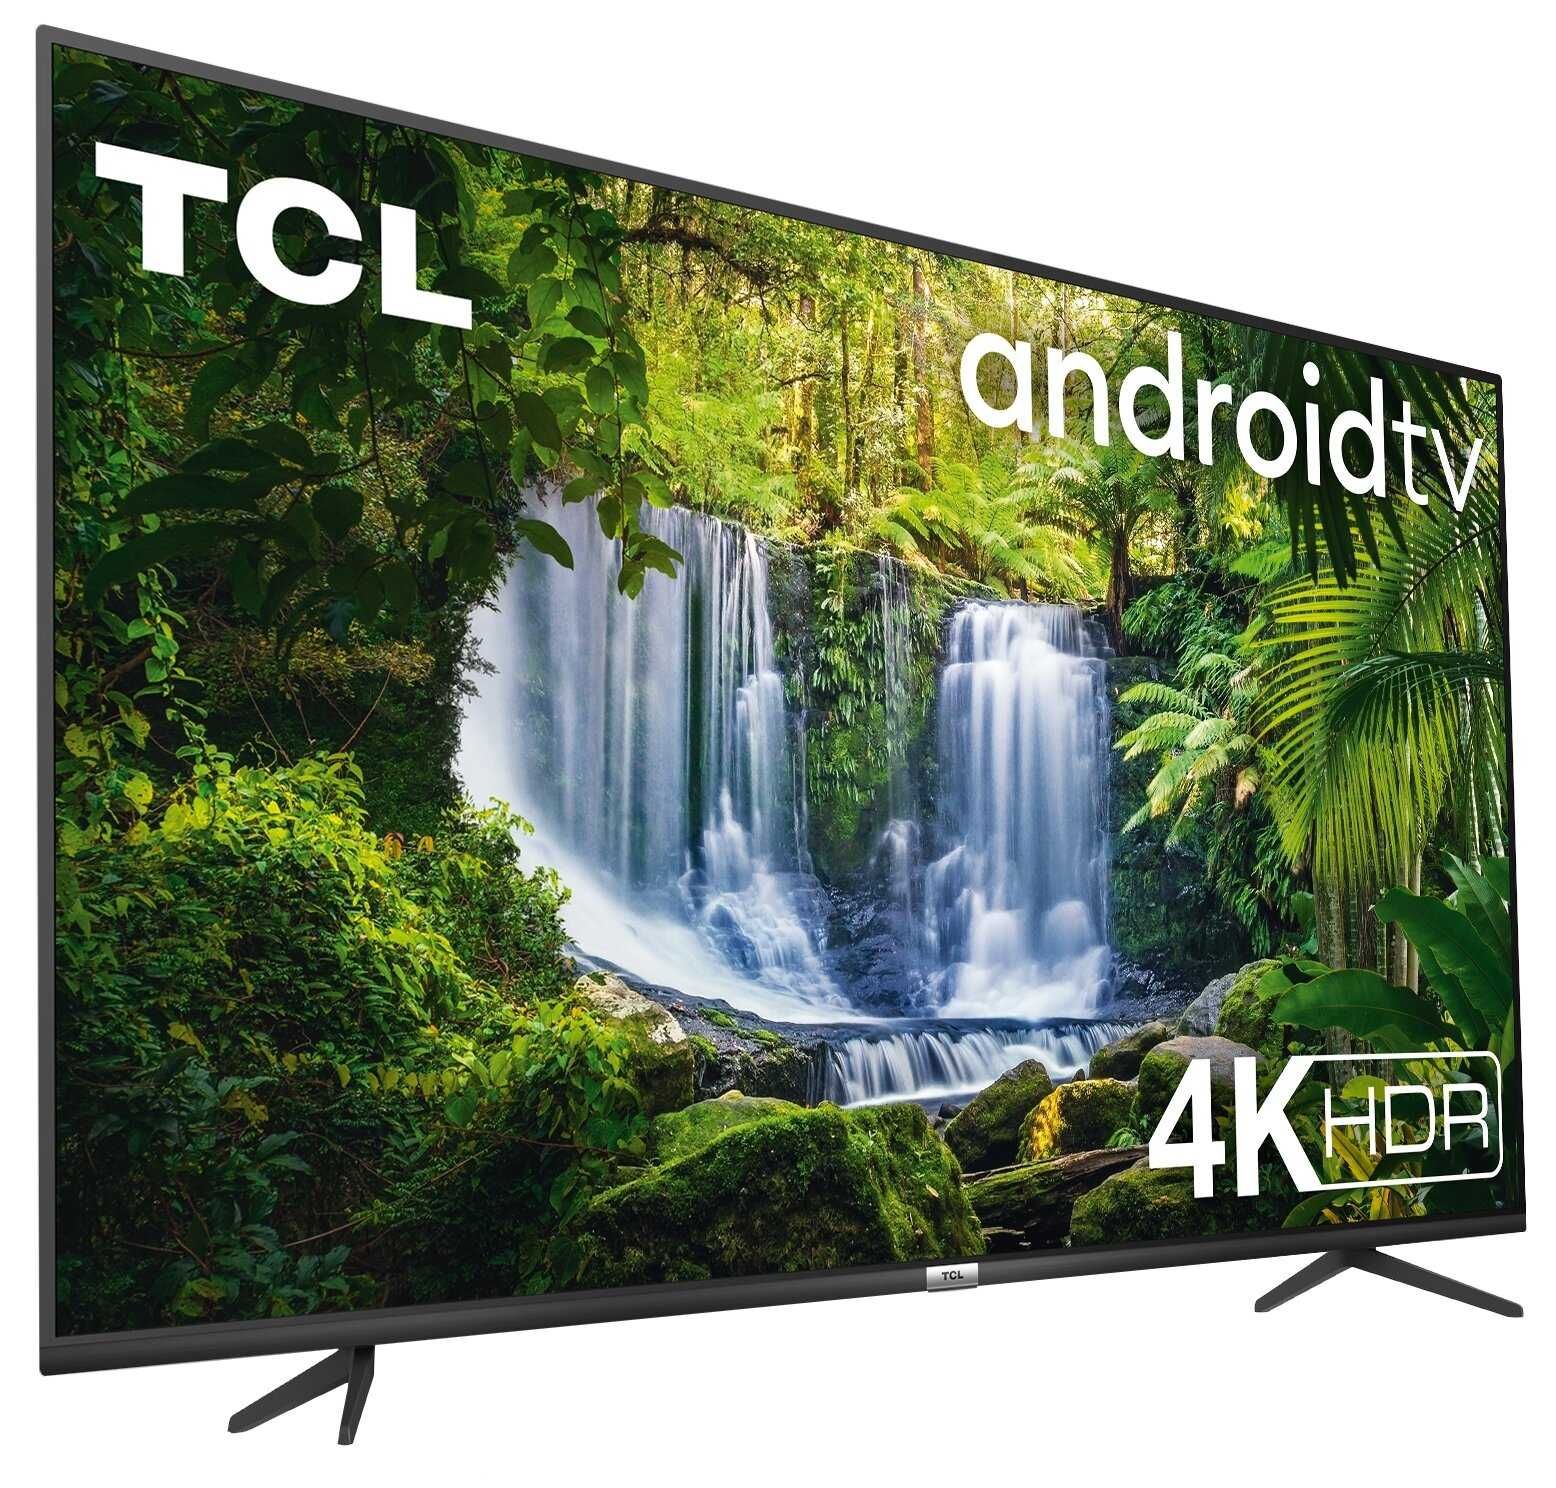 Wyprzedaż! Telewizor LED 50" TCL 4K HDR AndroidTV WiFi BT DVBT2 NowyGW